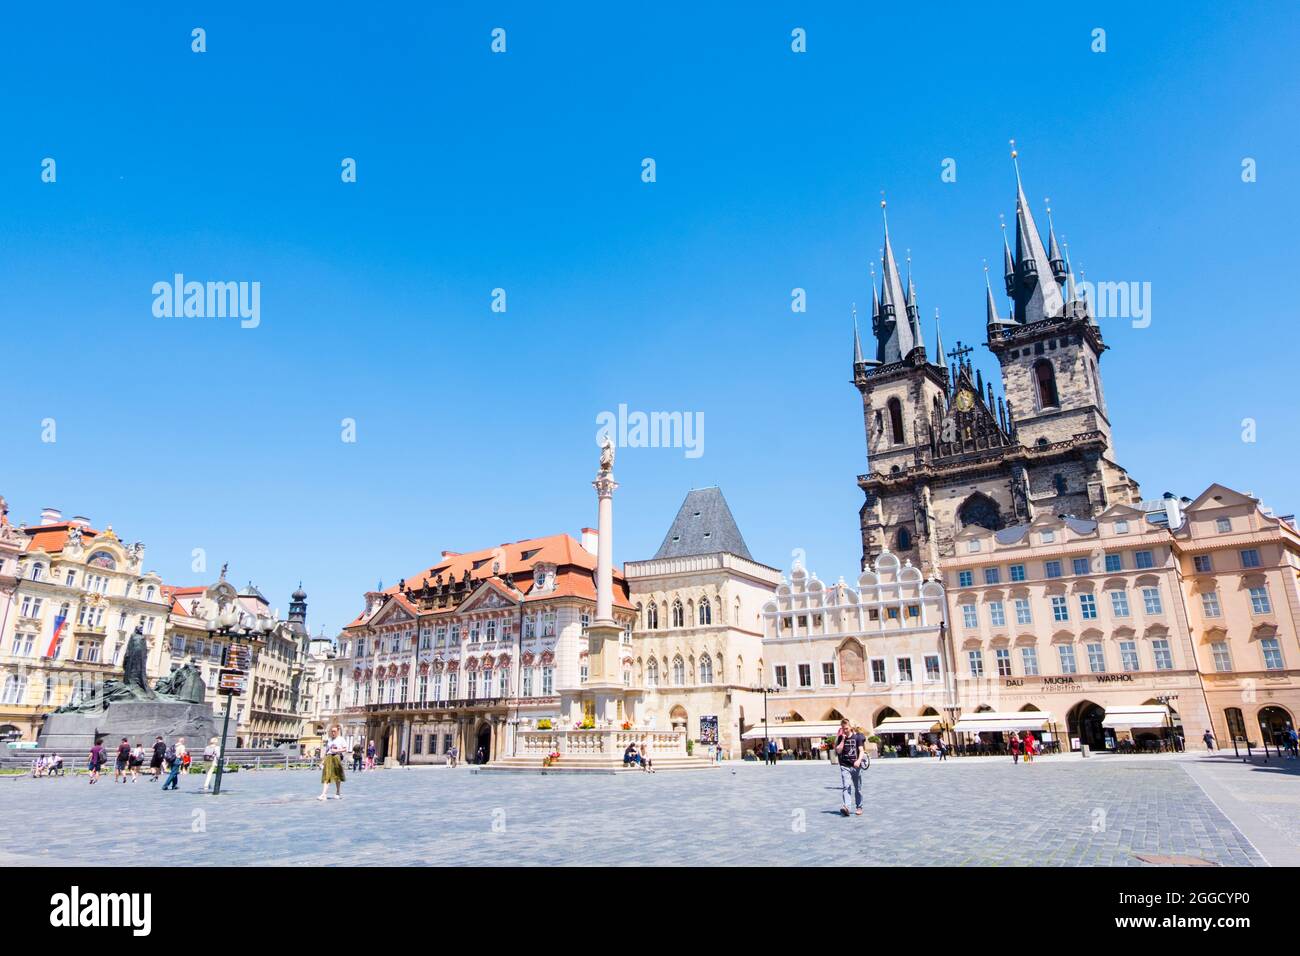 Staroměstské náměstí, Old Town Square, Prague, Czech Republic Stock Photo